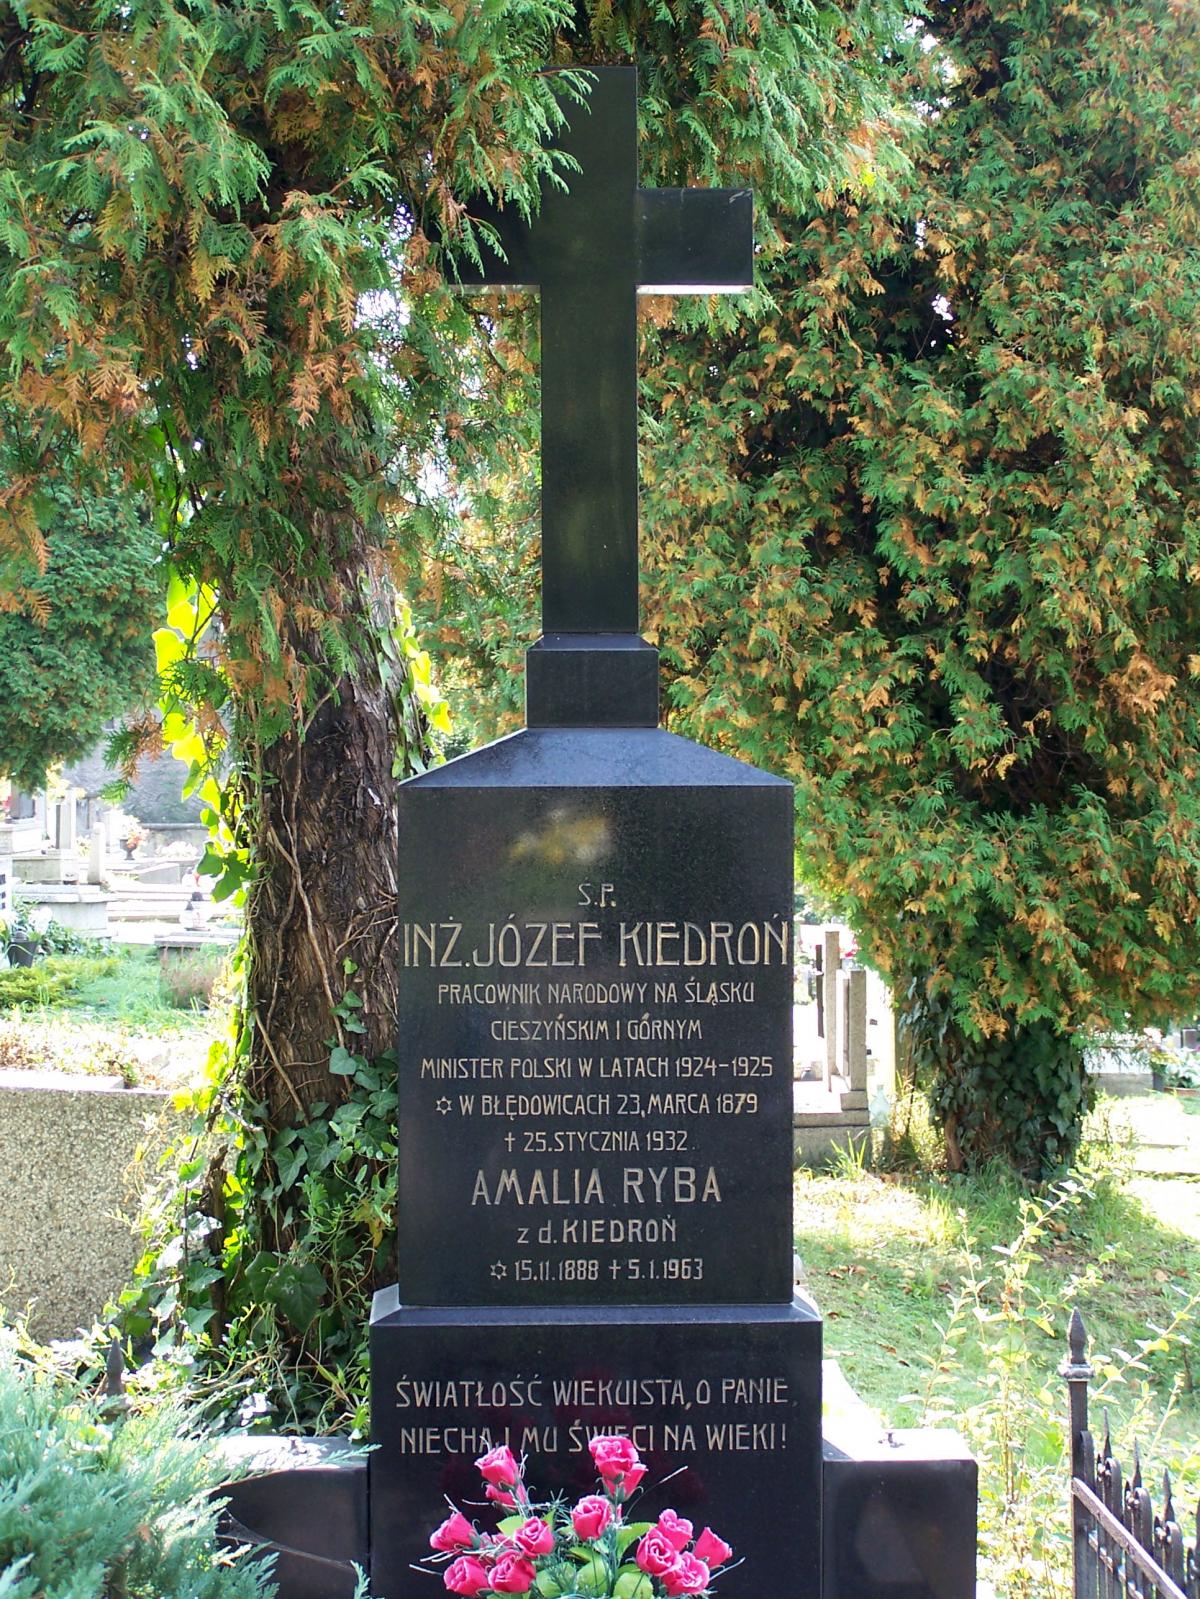 Wikipedia, 2009 in Cieszyn, Graves in Cieszyn, Józef Kiedroń, Lutheran Cemetery in Cieszyn, Self-pub